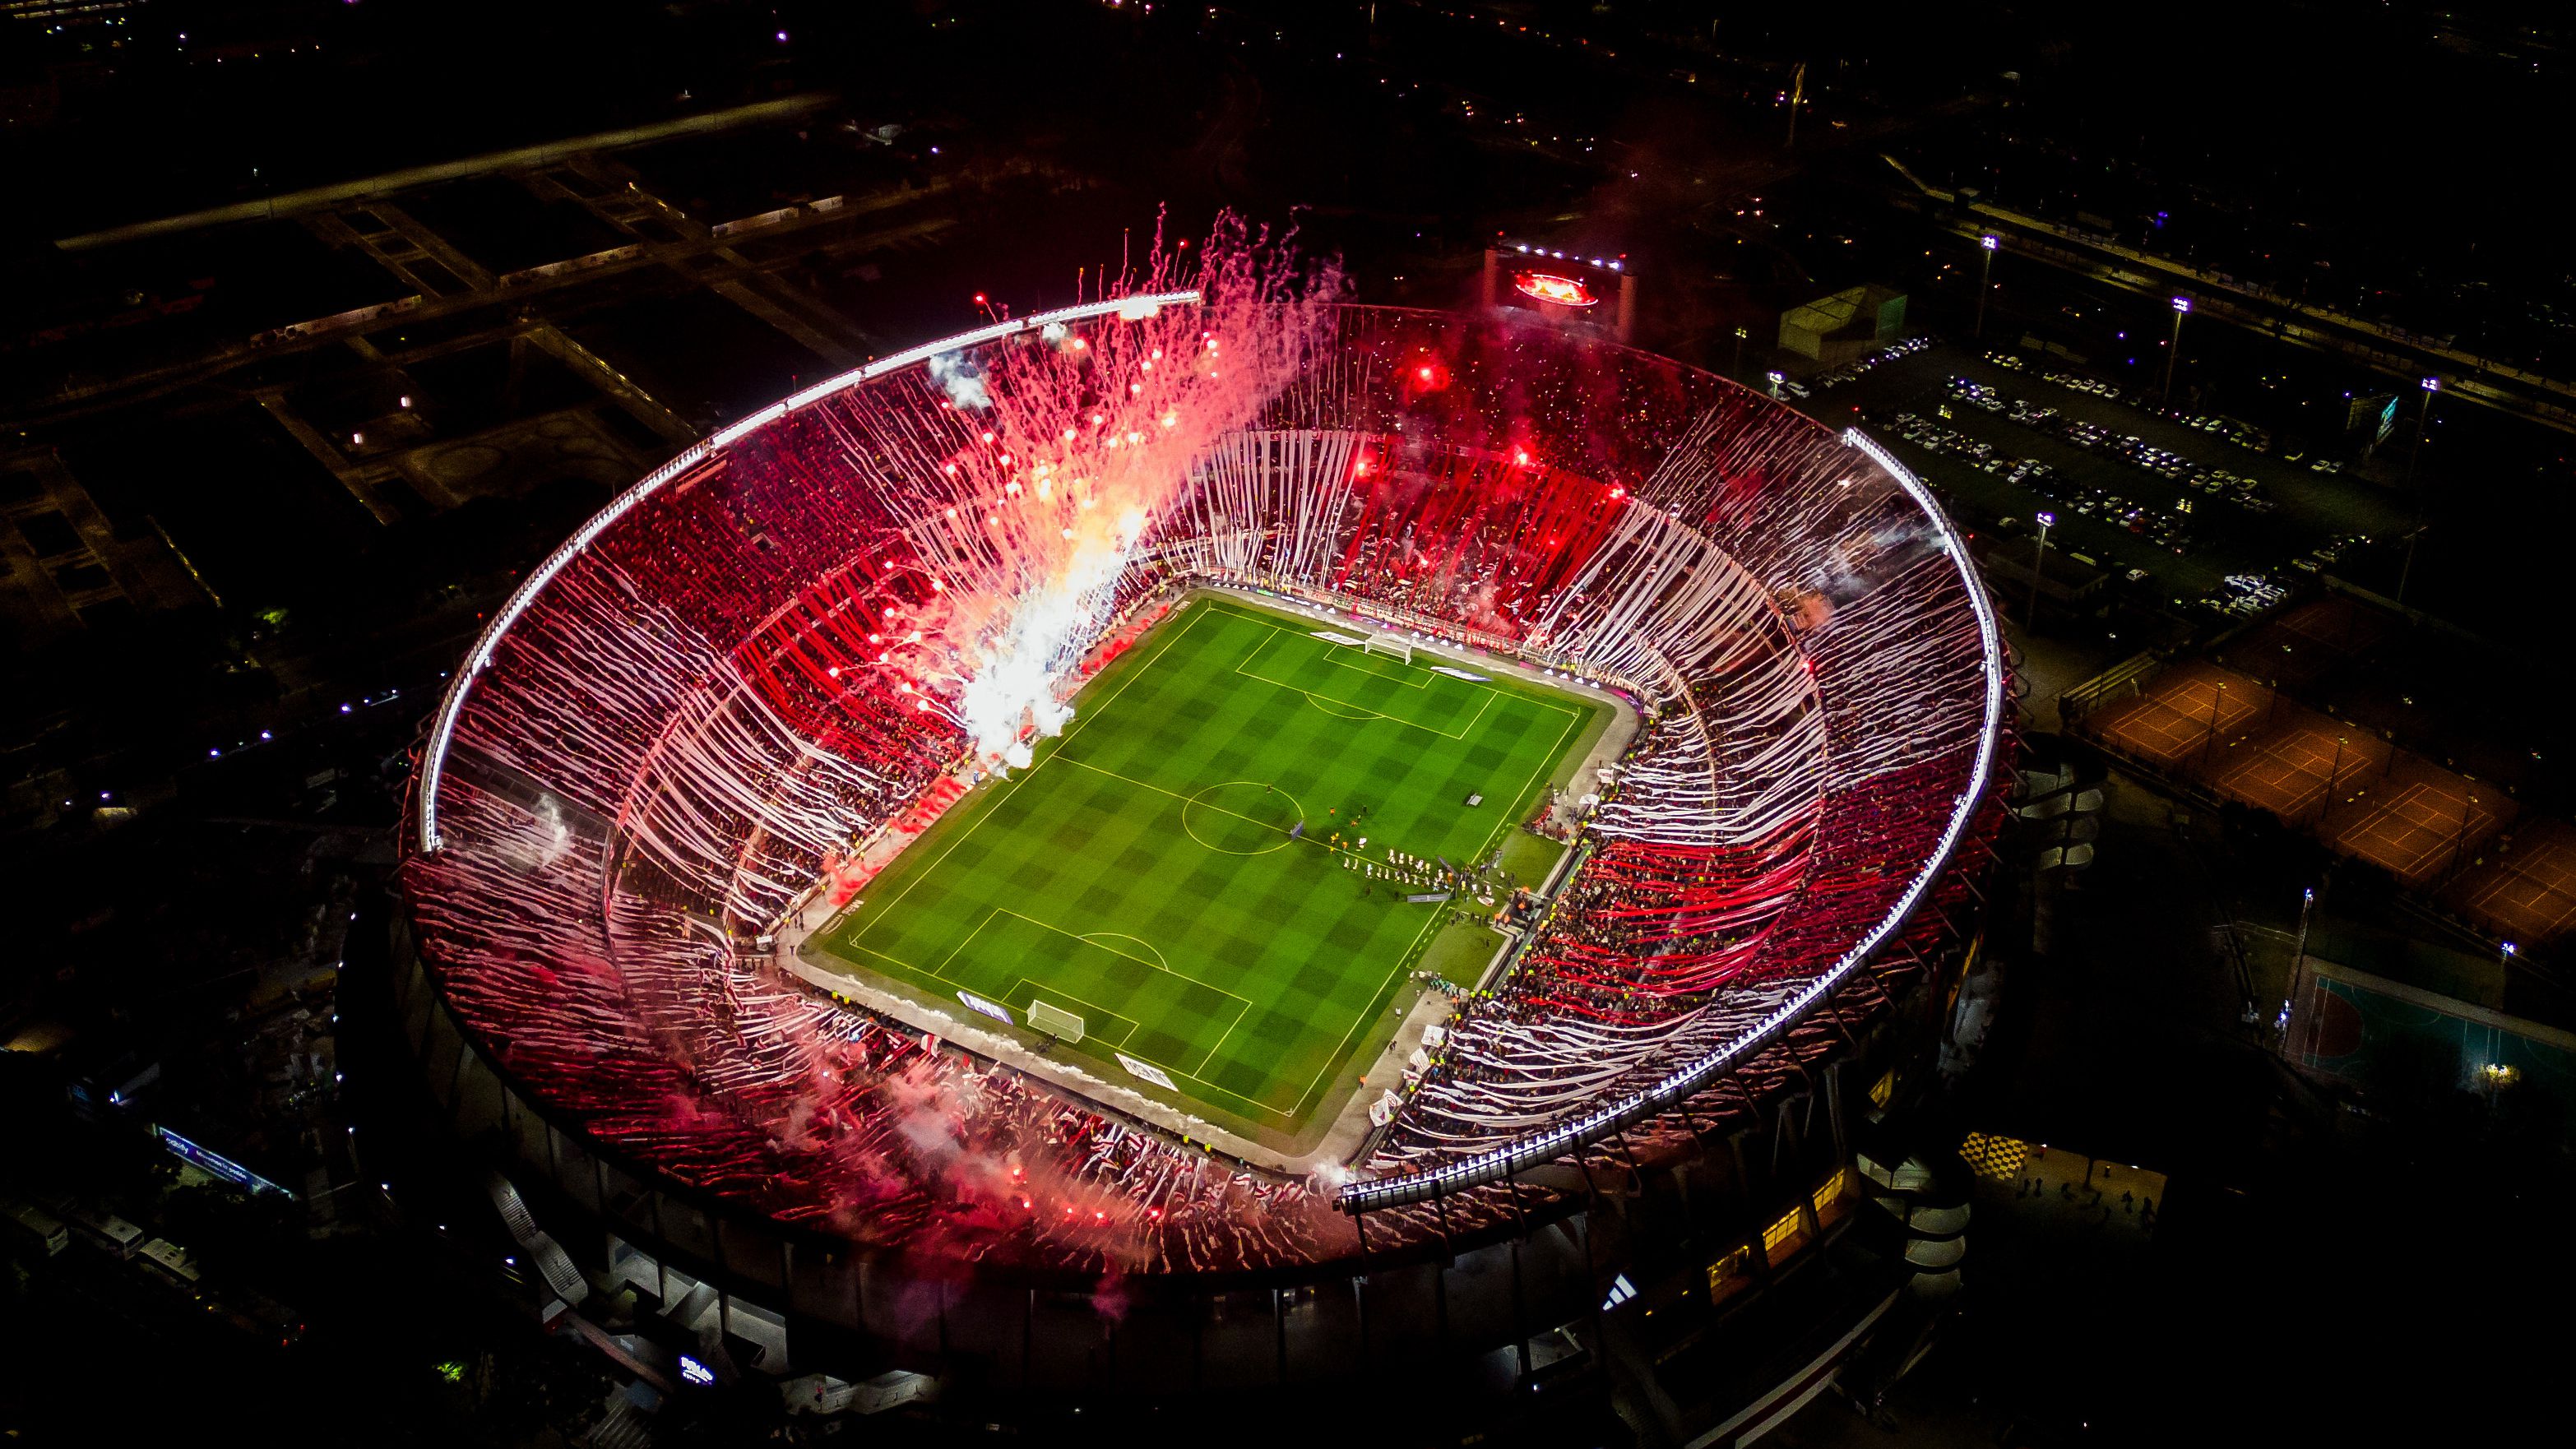 Így nézett ki a River Plate stadionja a magasból az ünneplés közben